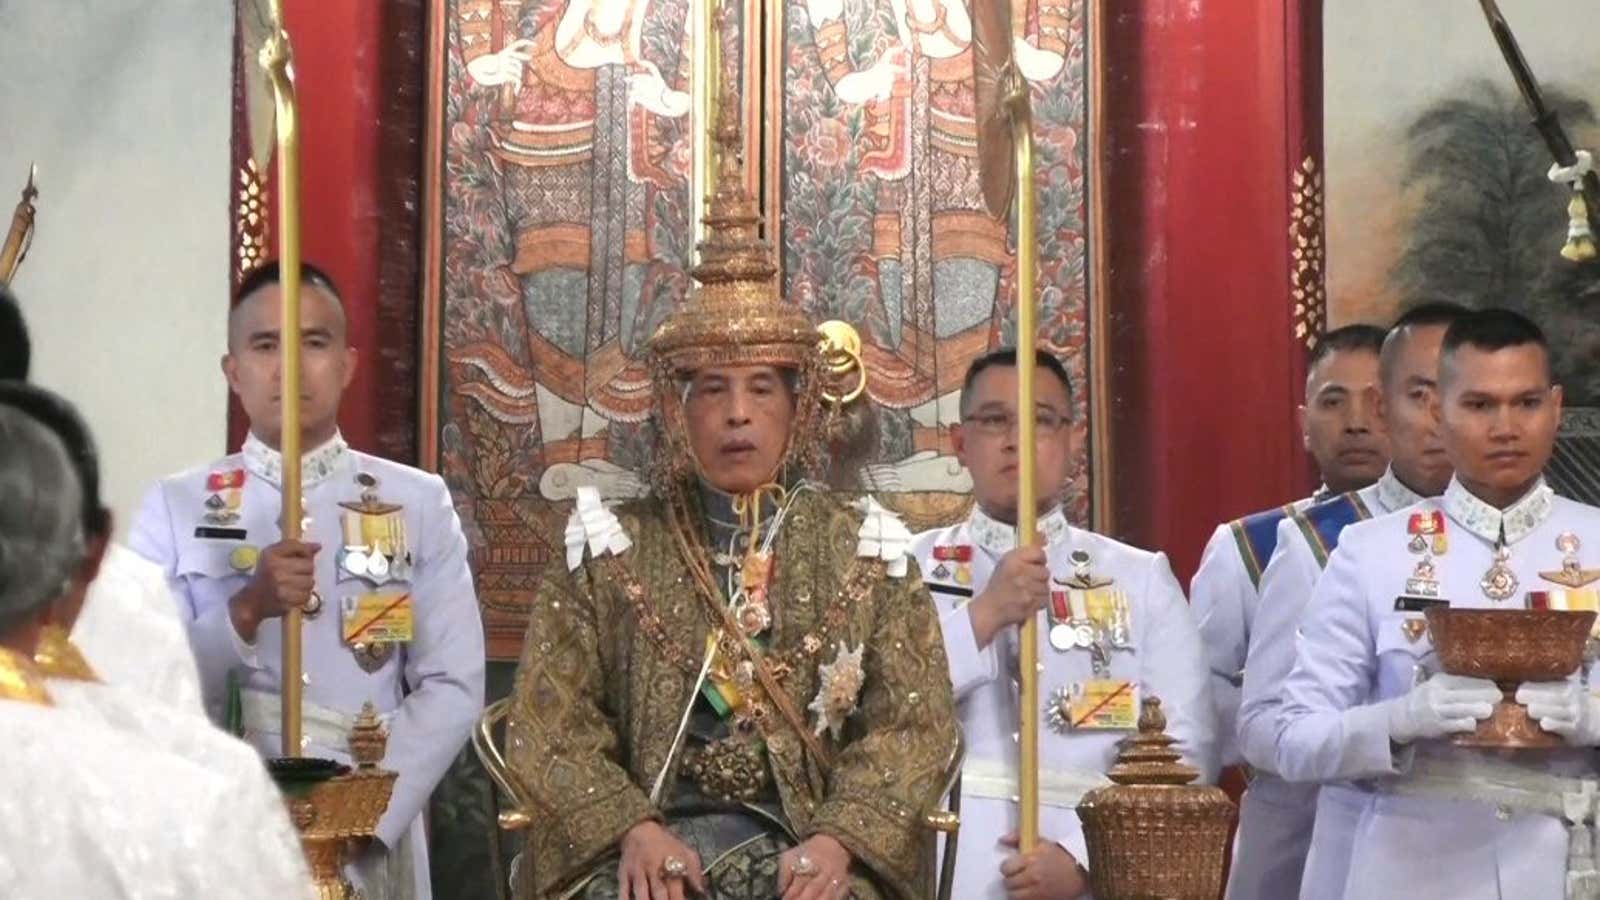 King Maha Vajiralongkorn was crowned on Saturday afternoon.